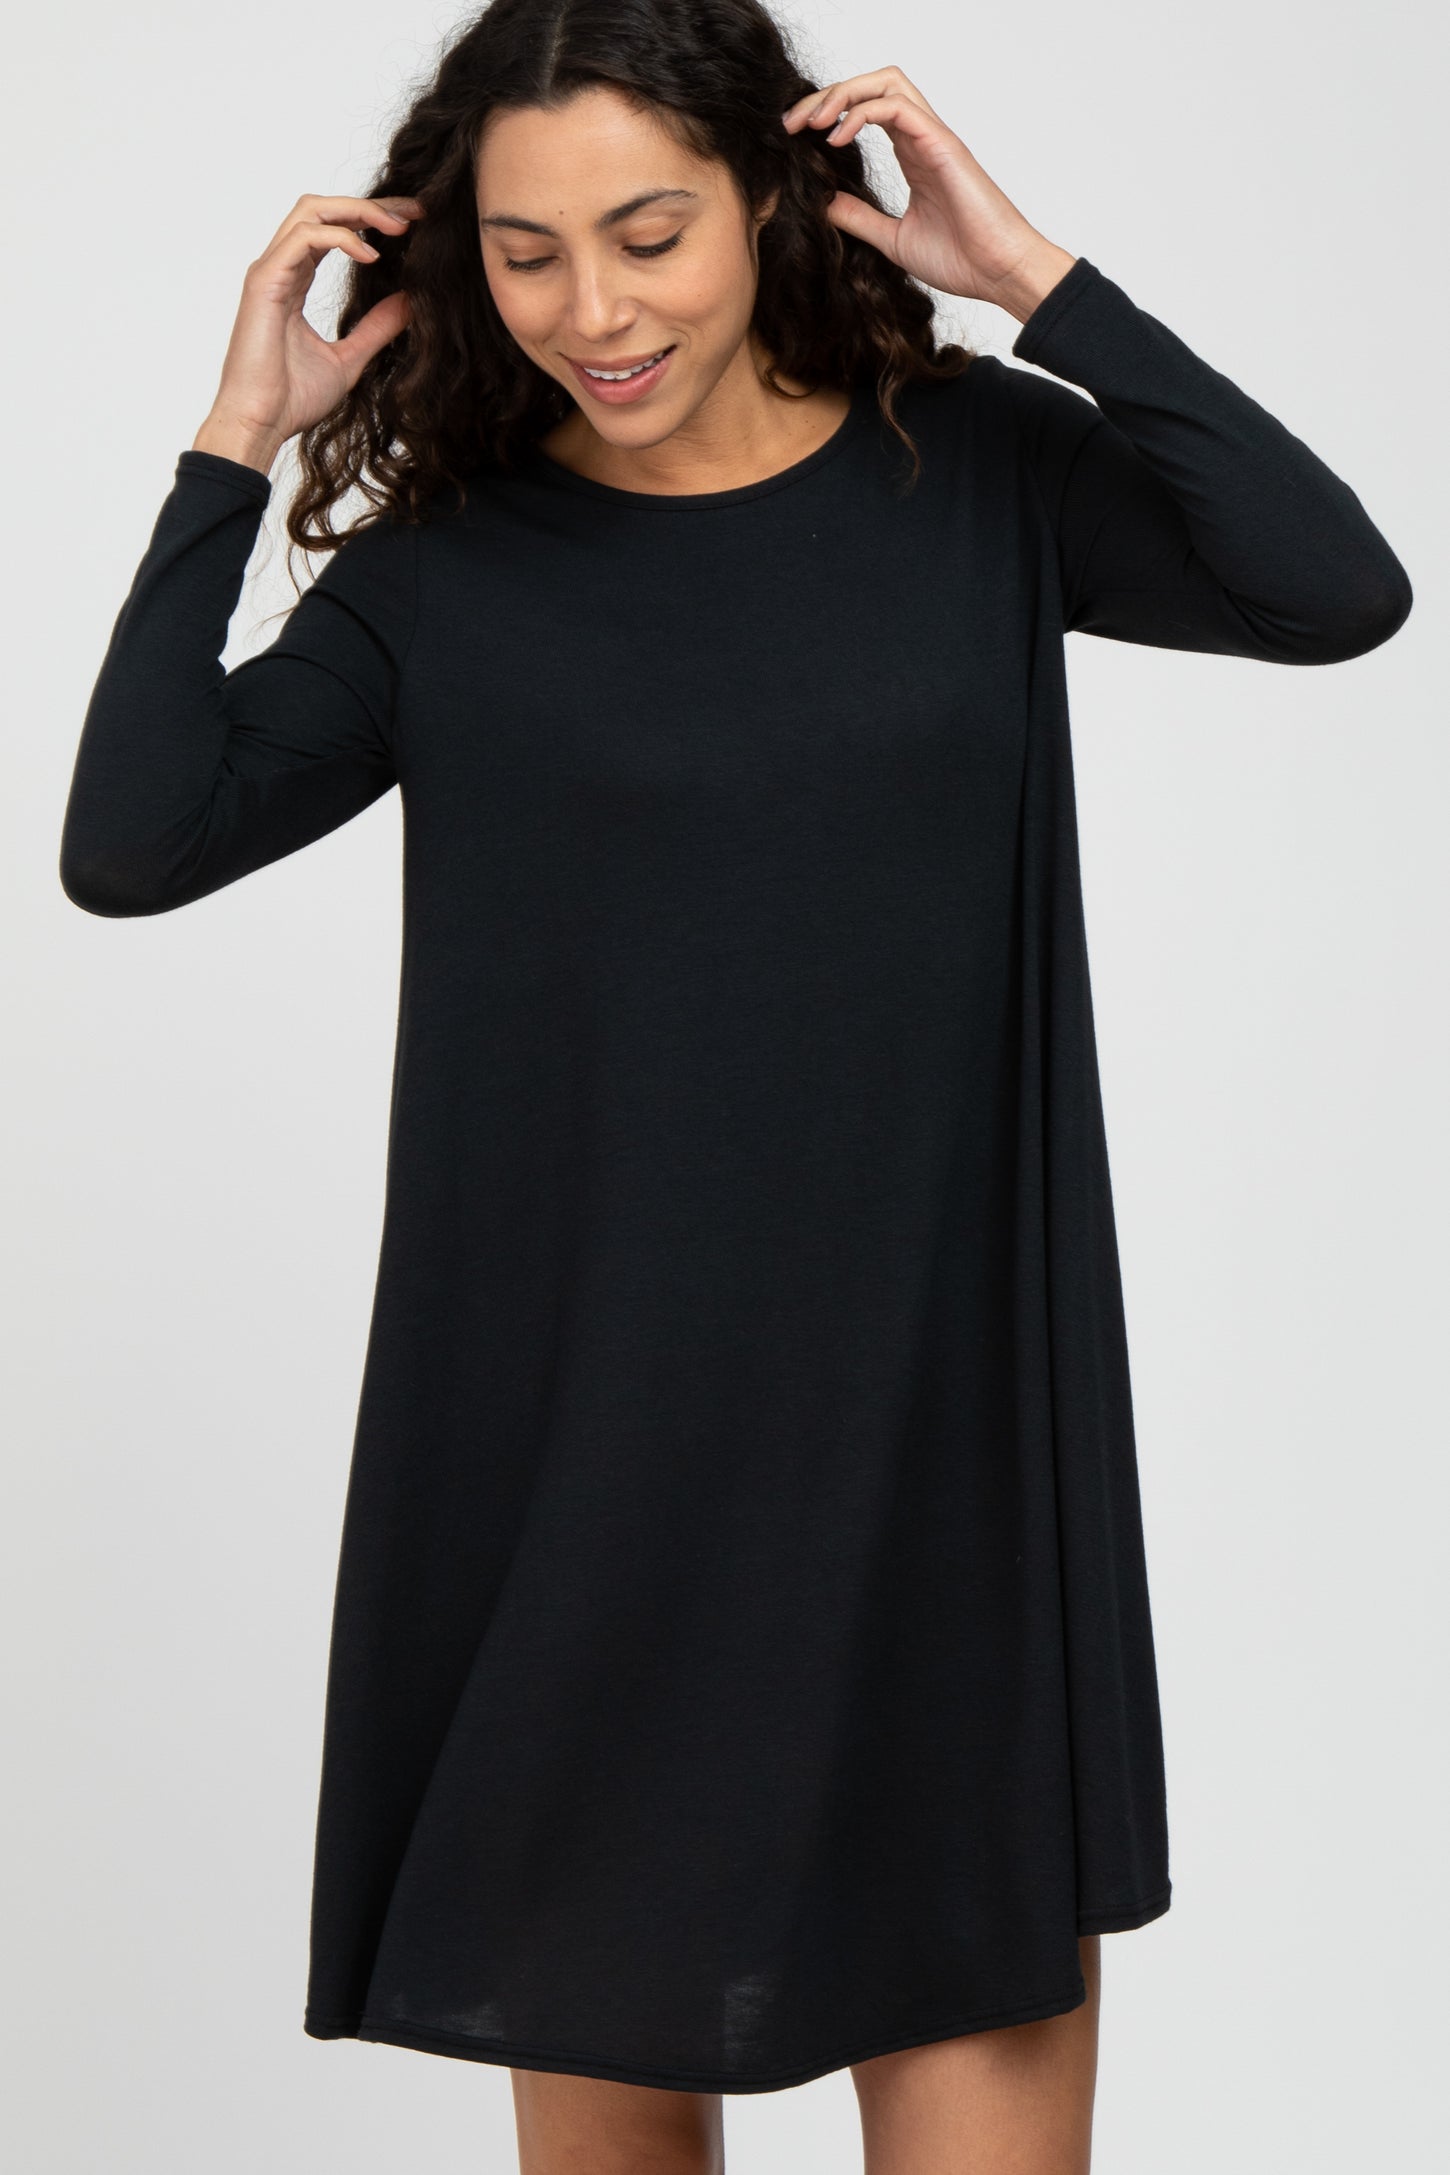 Black Knit Basic Maternity Dress– PinkBlush